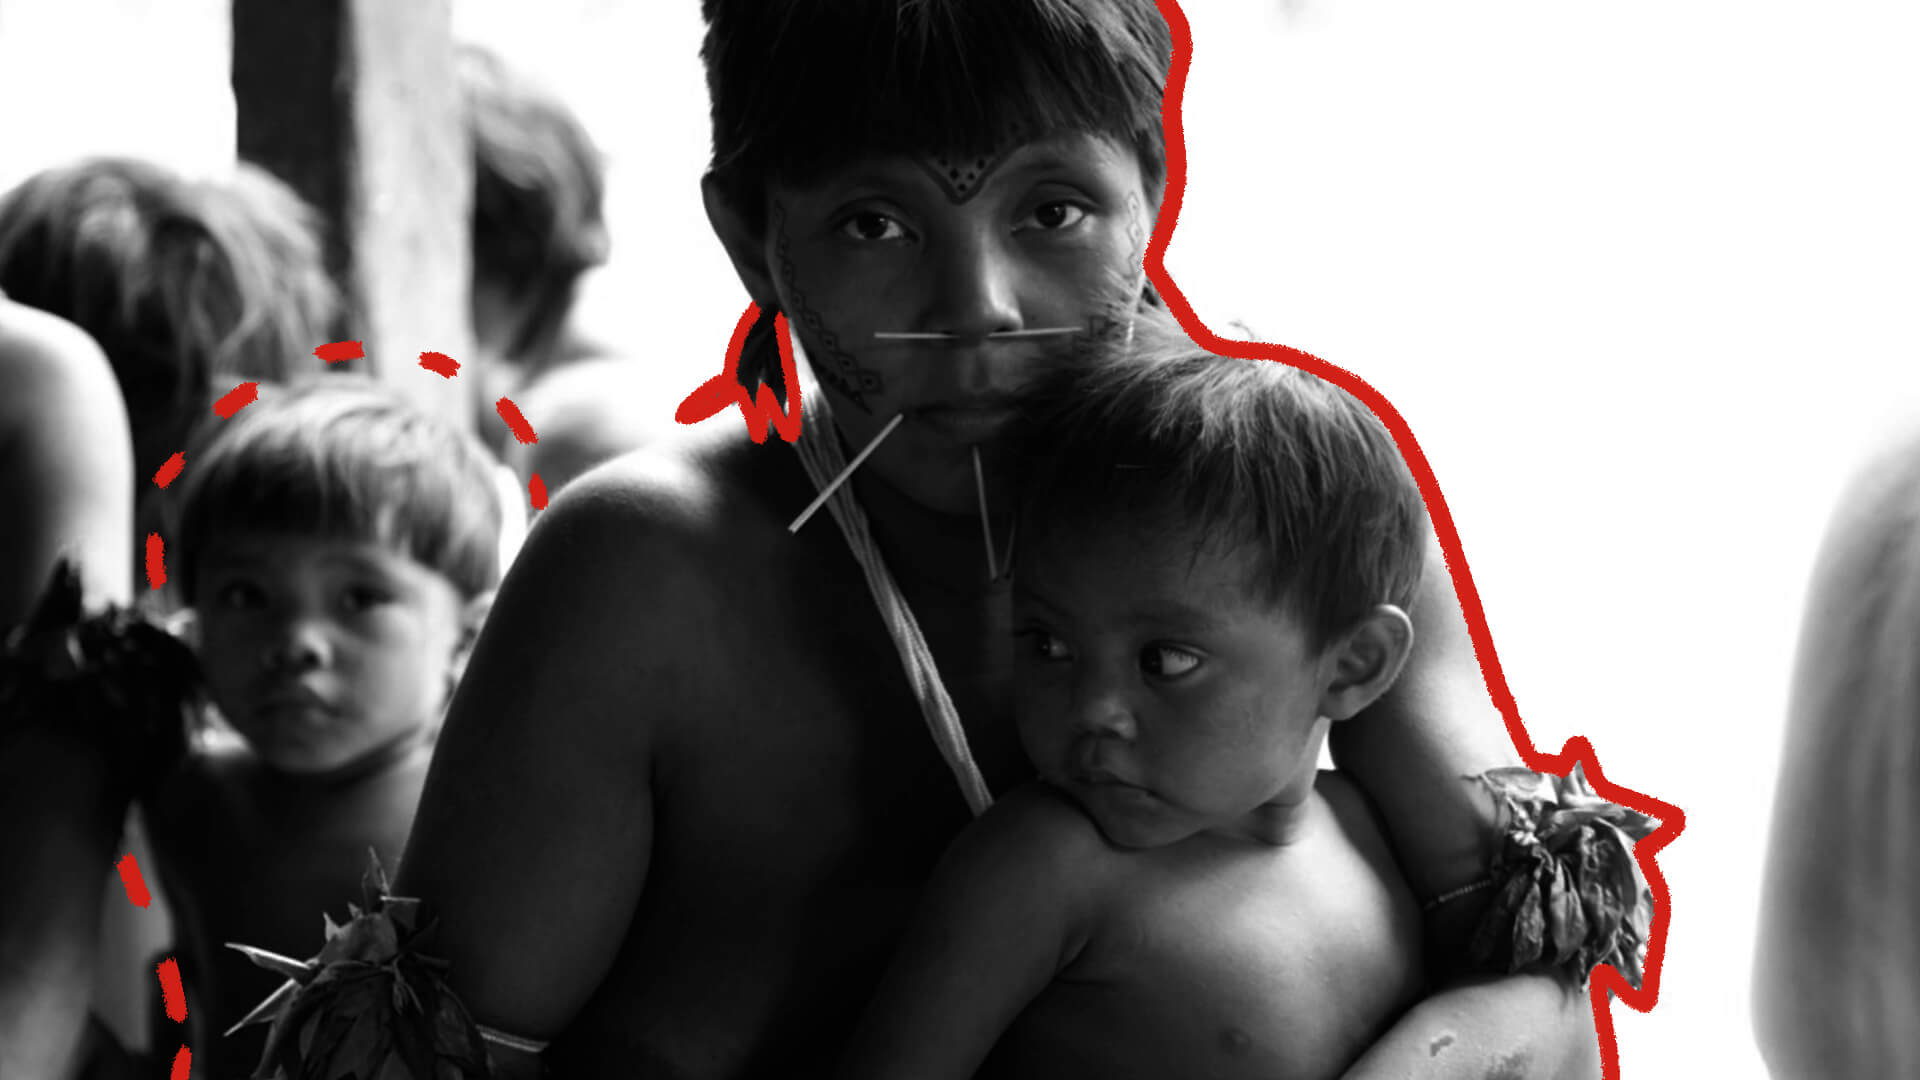 A foto mostra uma mulher indígena de cabelos curtos e brincos segurando um menino indígena contra o peito.